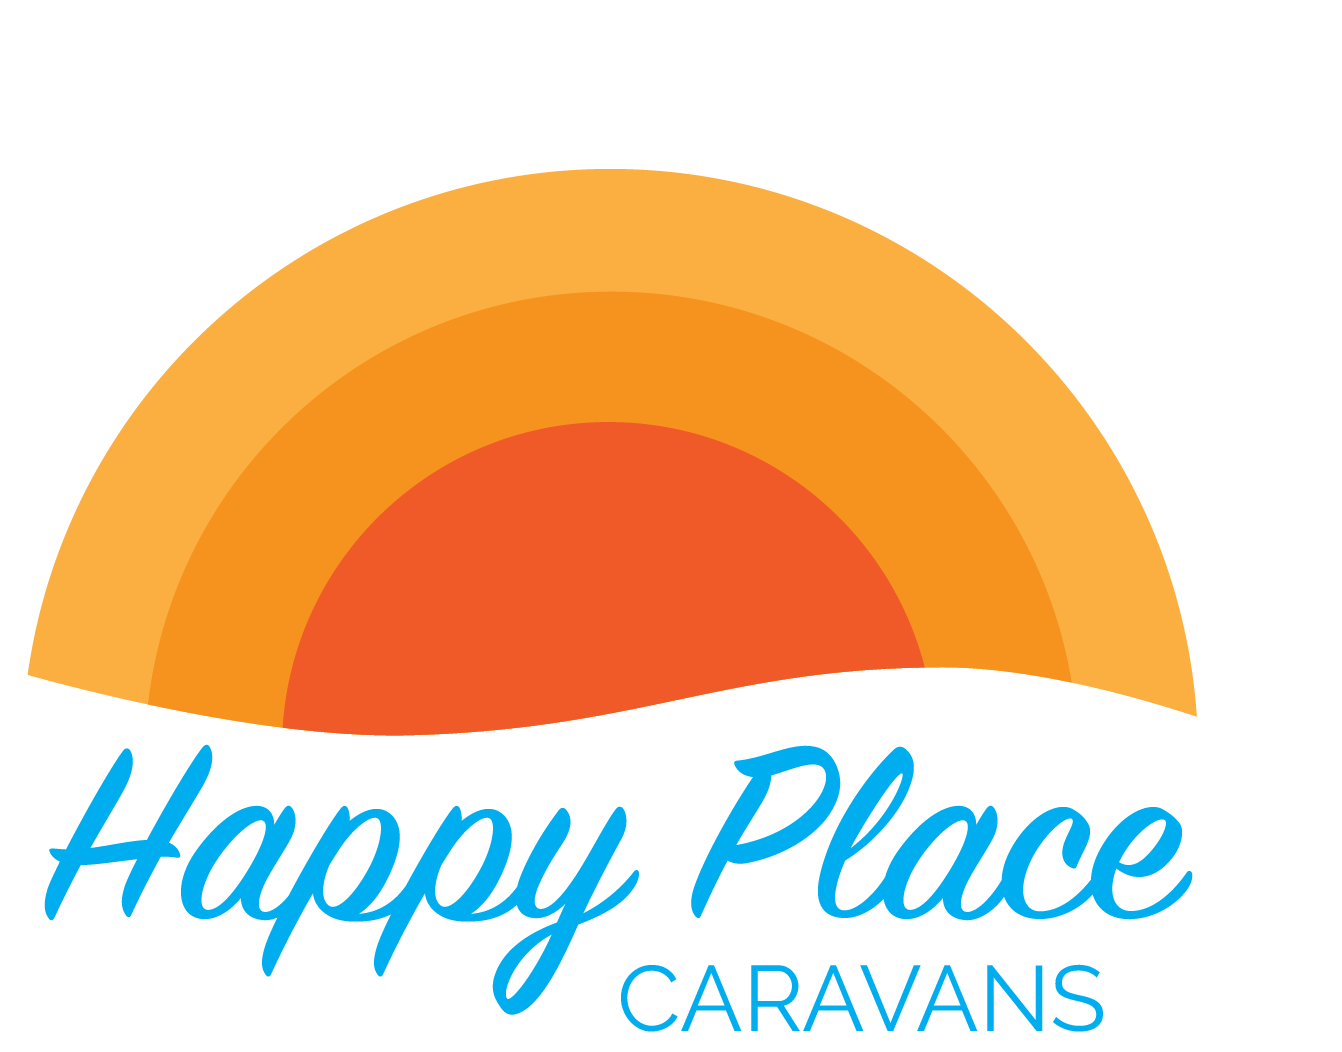 Happy Place Caravans at Butlins Skegness